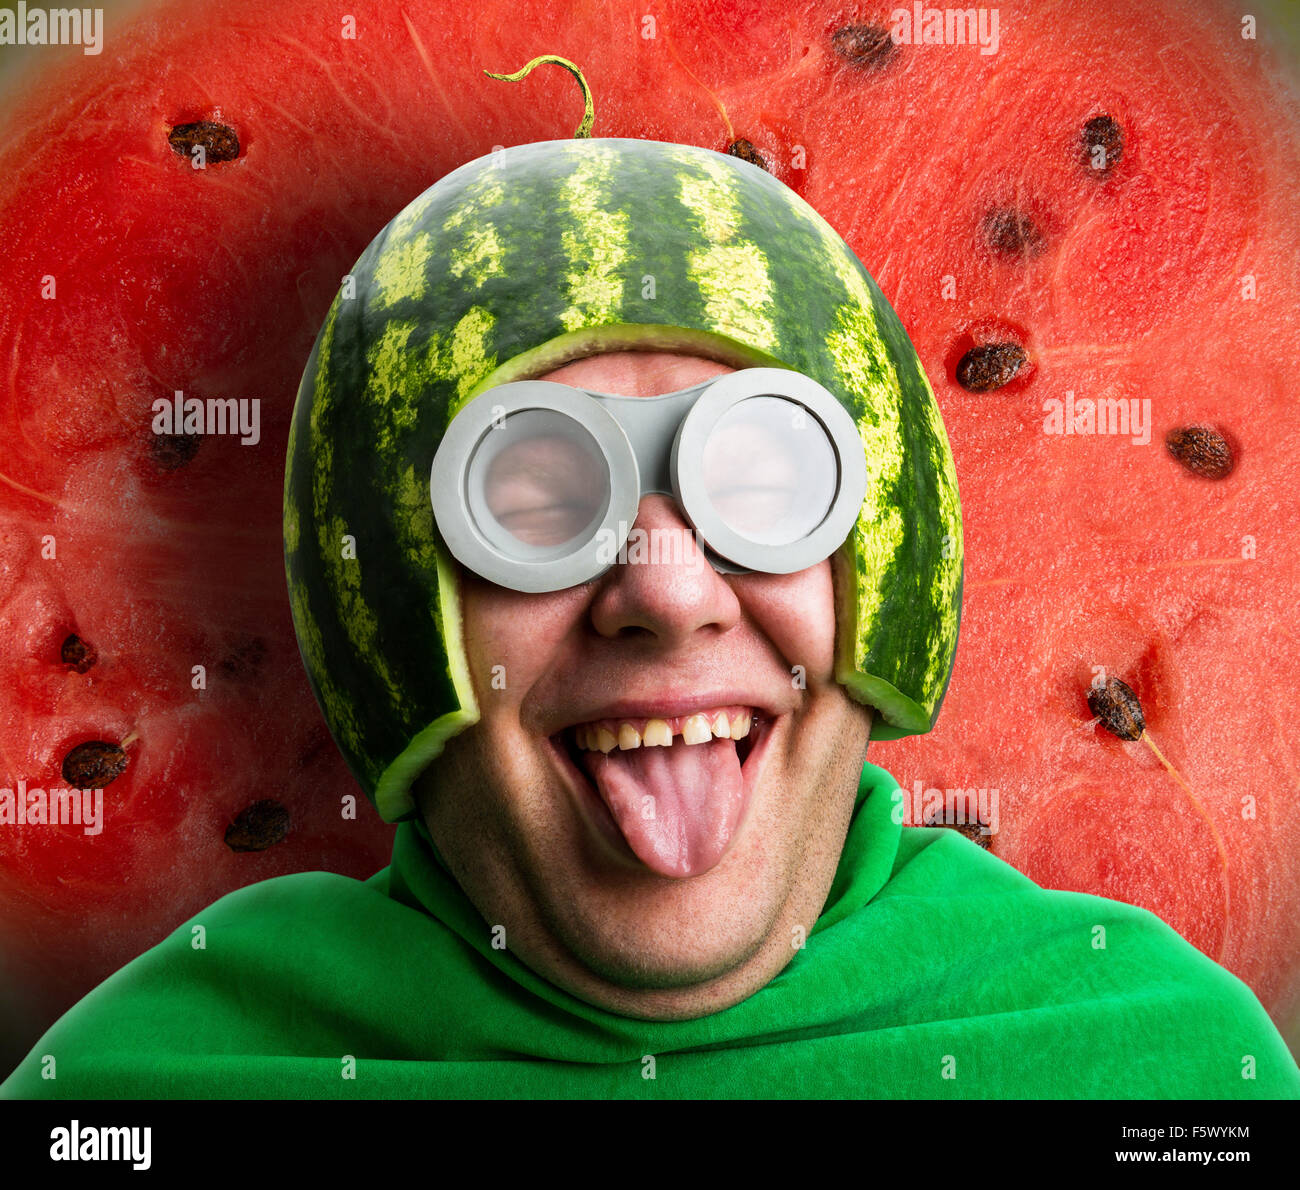 Lustiger Mensch mit Wassermelone Helm und Brillen sieht aus wie eine  parasitäre Raupe Stockfotografie - Alamy